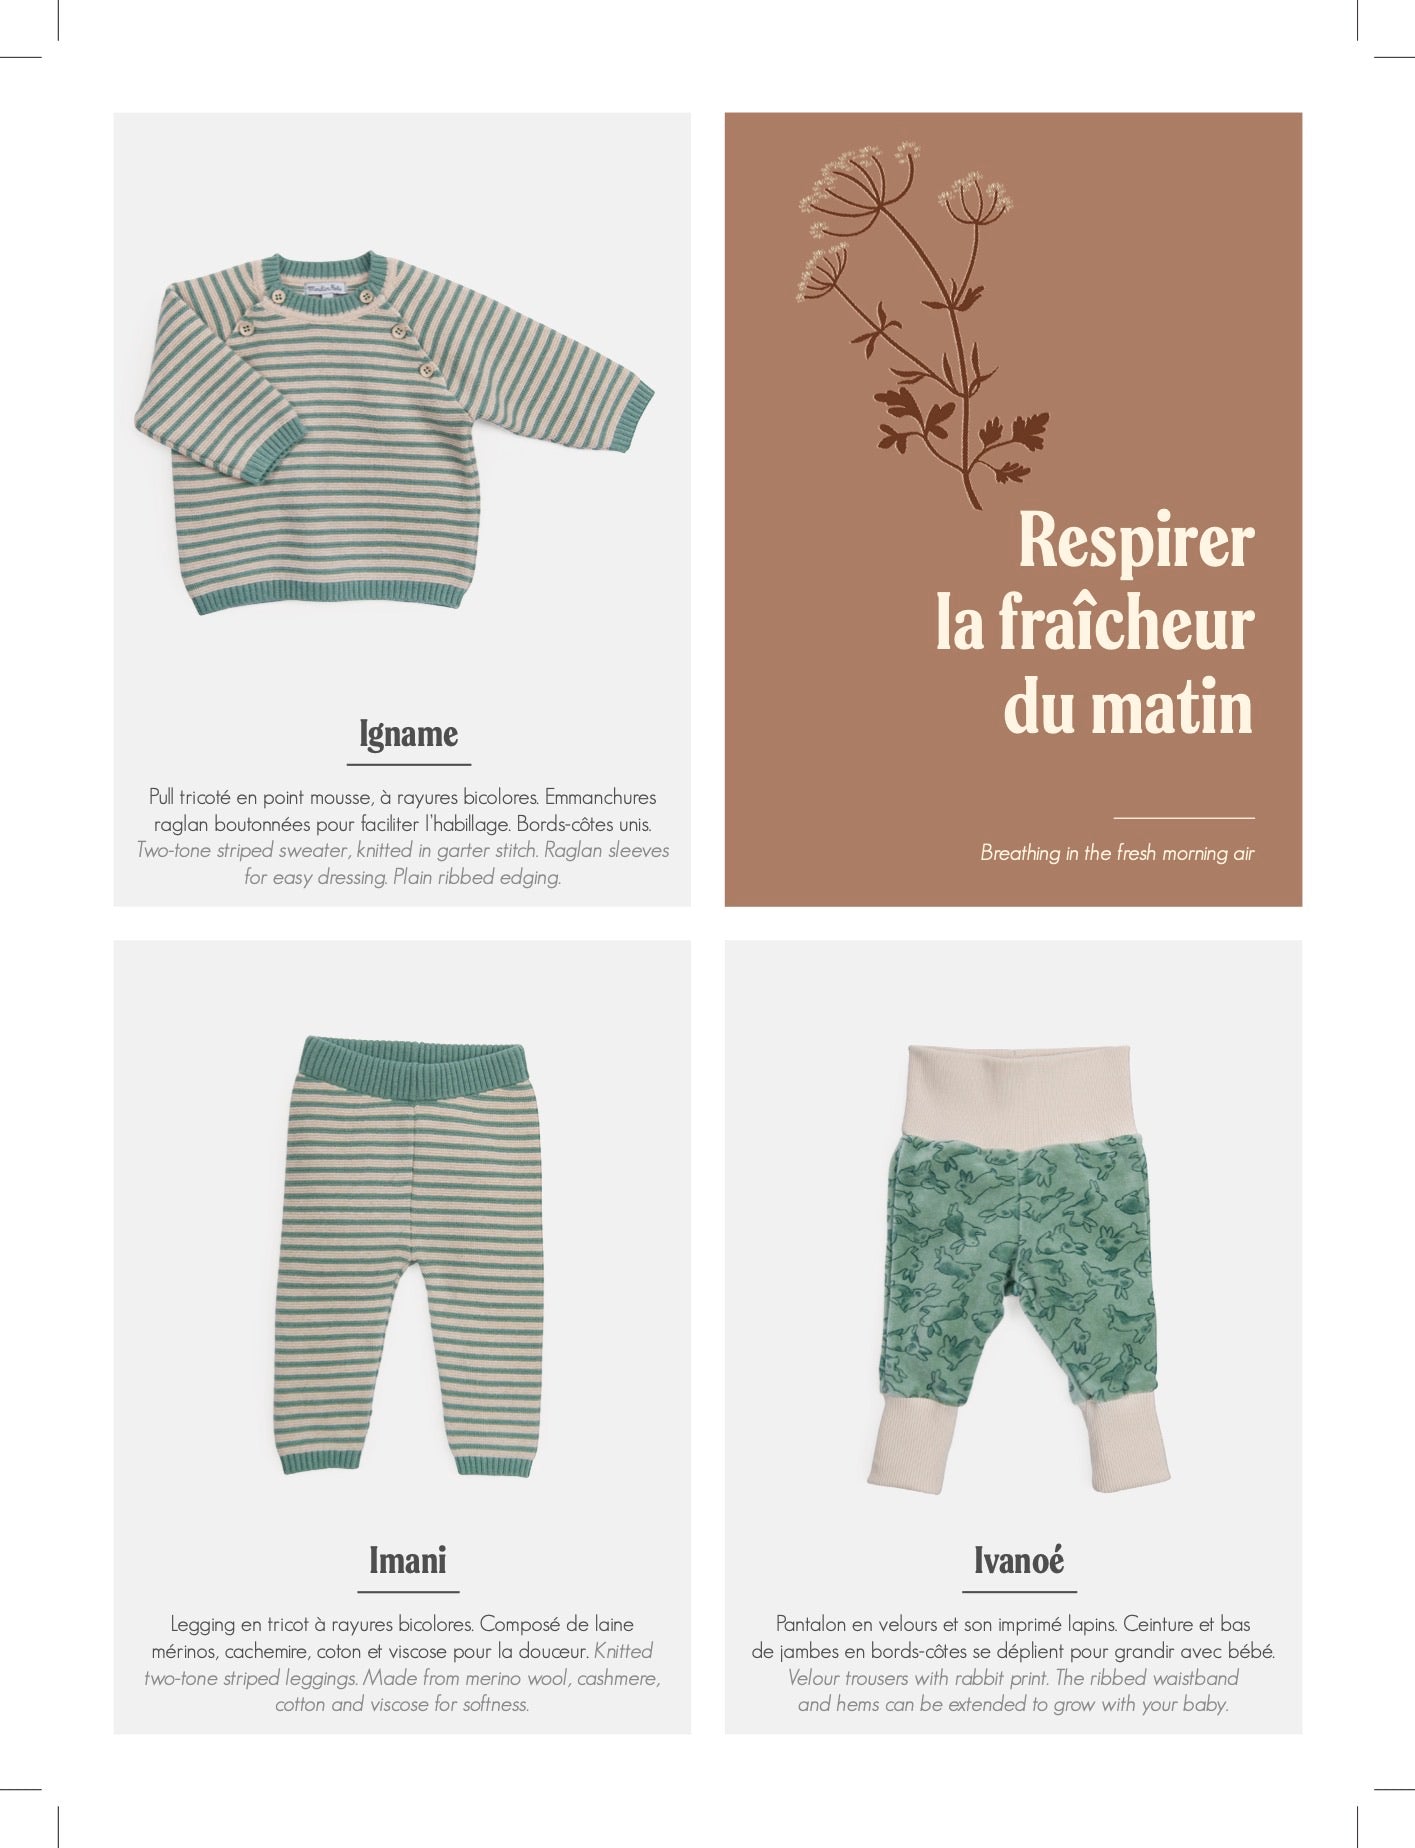 Catalogo Abbigliamento Moulin Roty Autunno Inverno Trois Petits Lapins 2023 per bambini